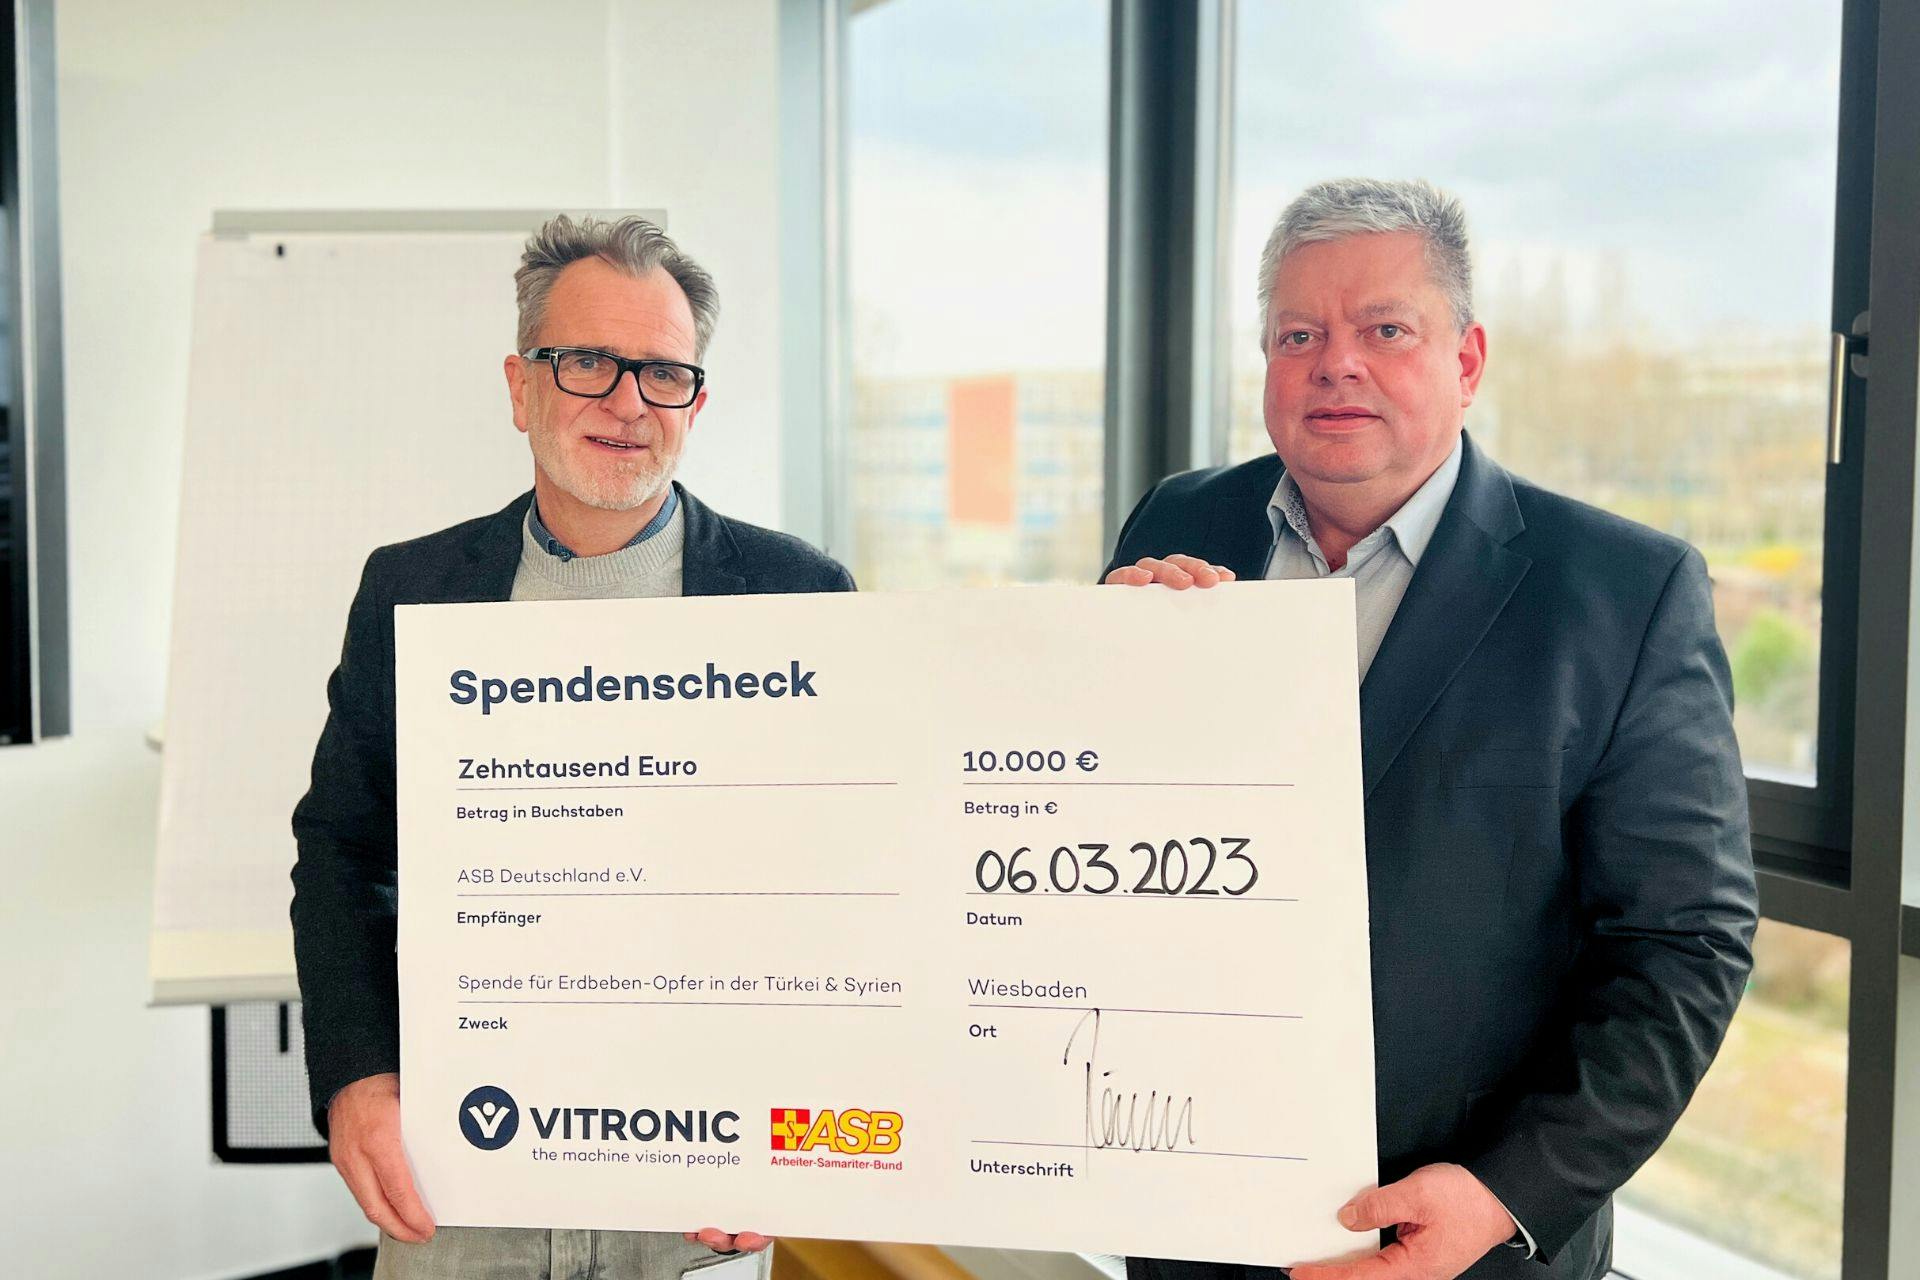 ساهمت شركة VITRONIC بمبلغ 10,000 يورو كمساعدة إنسانية فورية تبرعت بها لمنظمة المساعدات الخيرية والرعاية الاجتماعية "ASB Deutschland E.V" لمد يد العون لضحايا الزلزال.